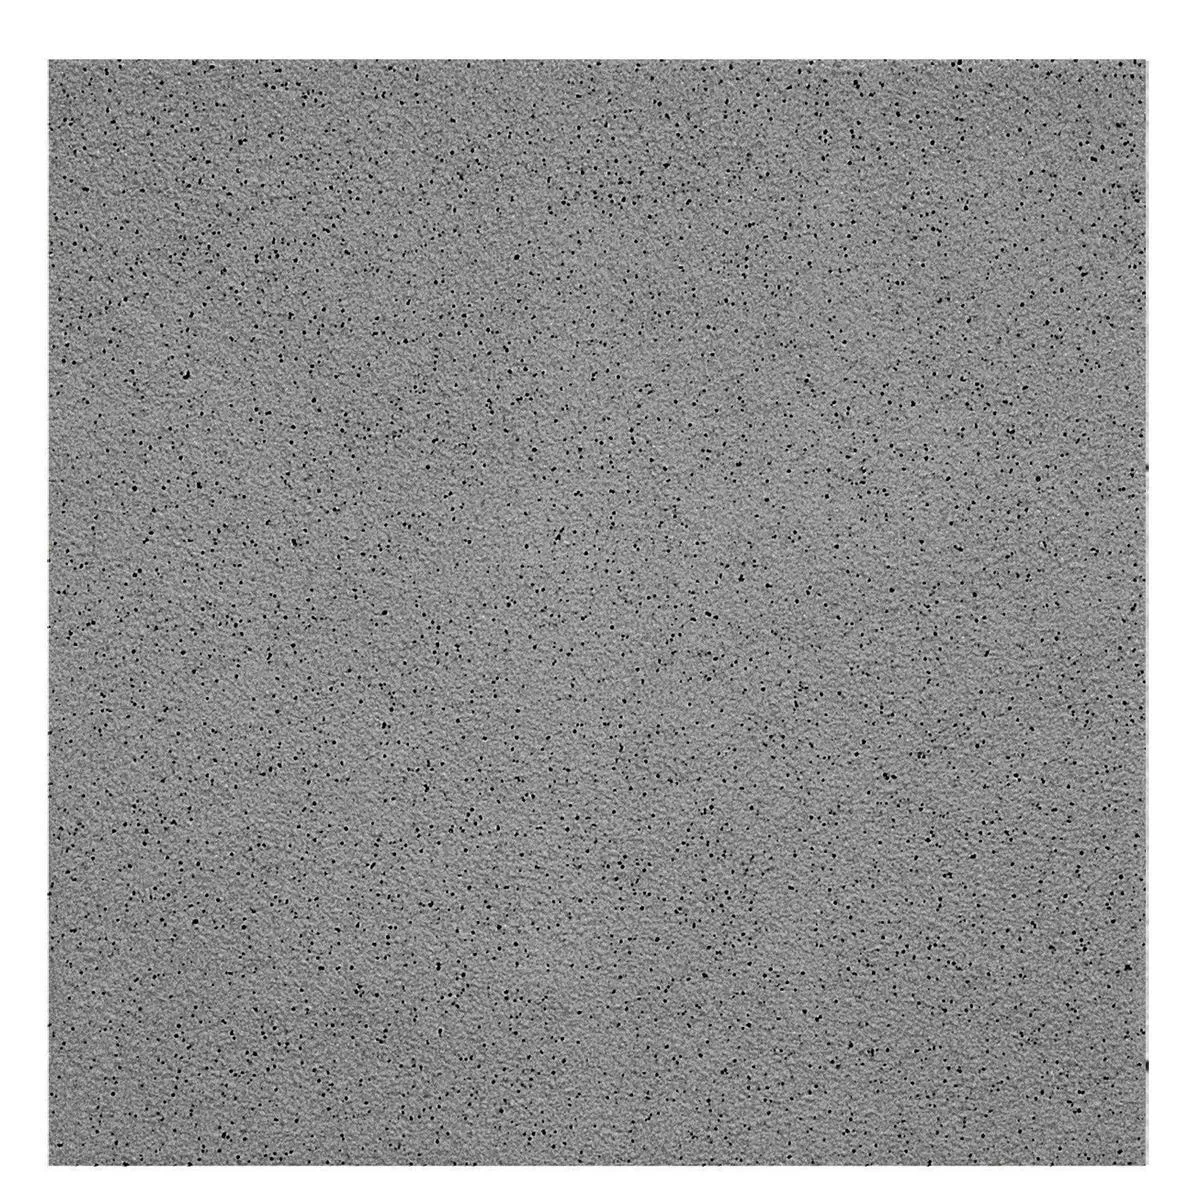 Πρότυπο Πλακάκι Δαπέδου Ψιλό Σιτάρι R11/B Ανθρακίτης 15x15cm